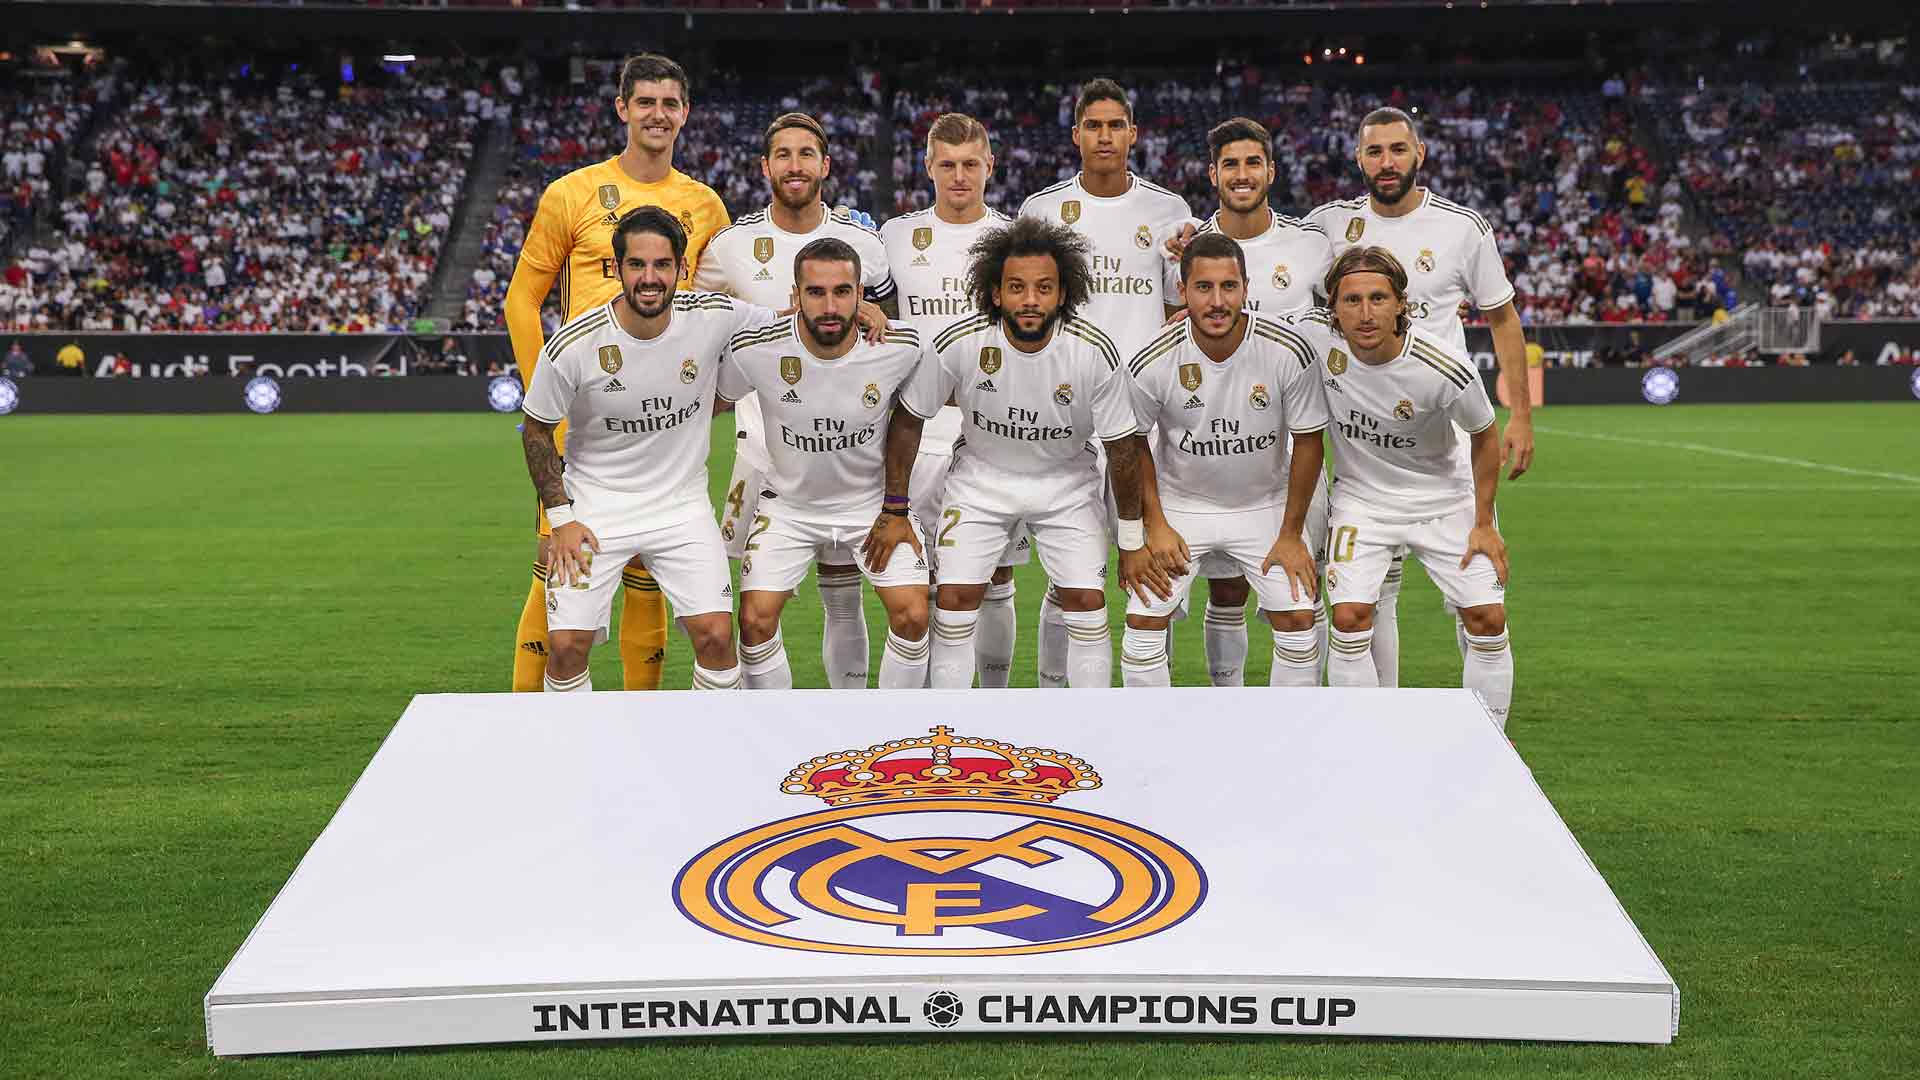 El Real Madrid: el club de fútbol más valioso del mundo, según 'Forbes'